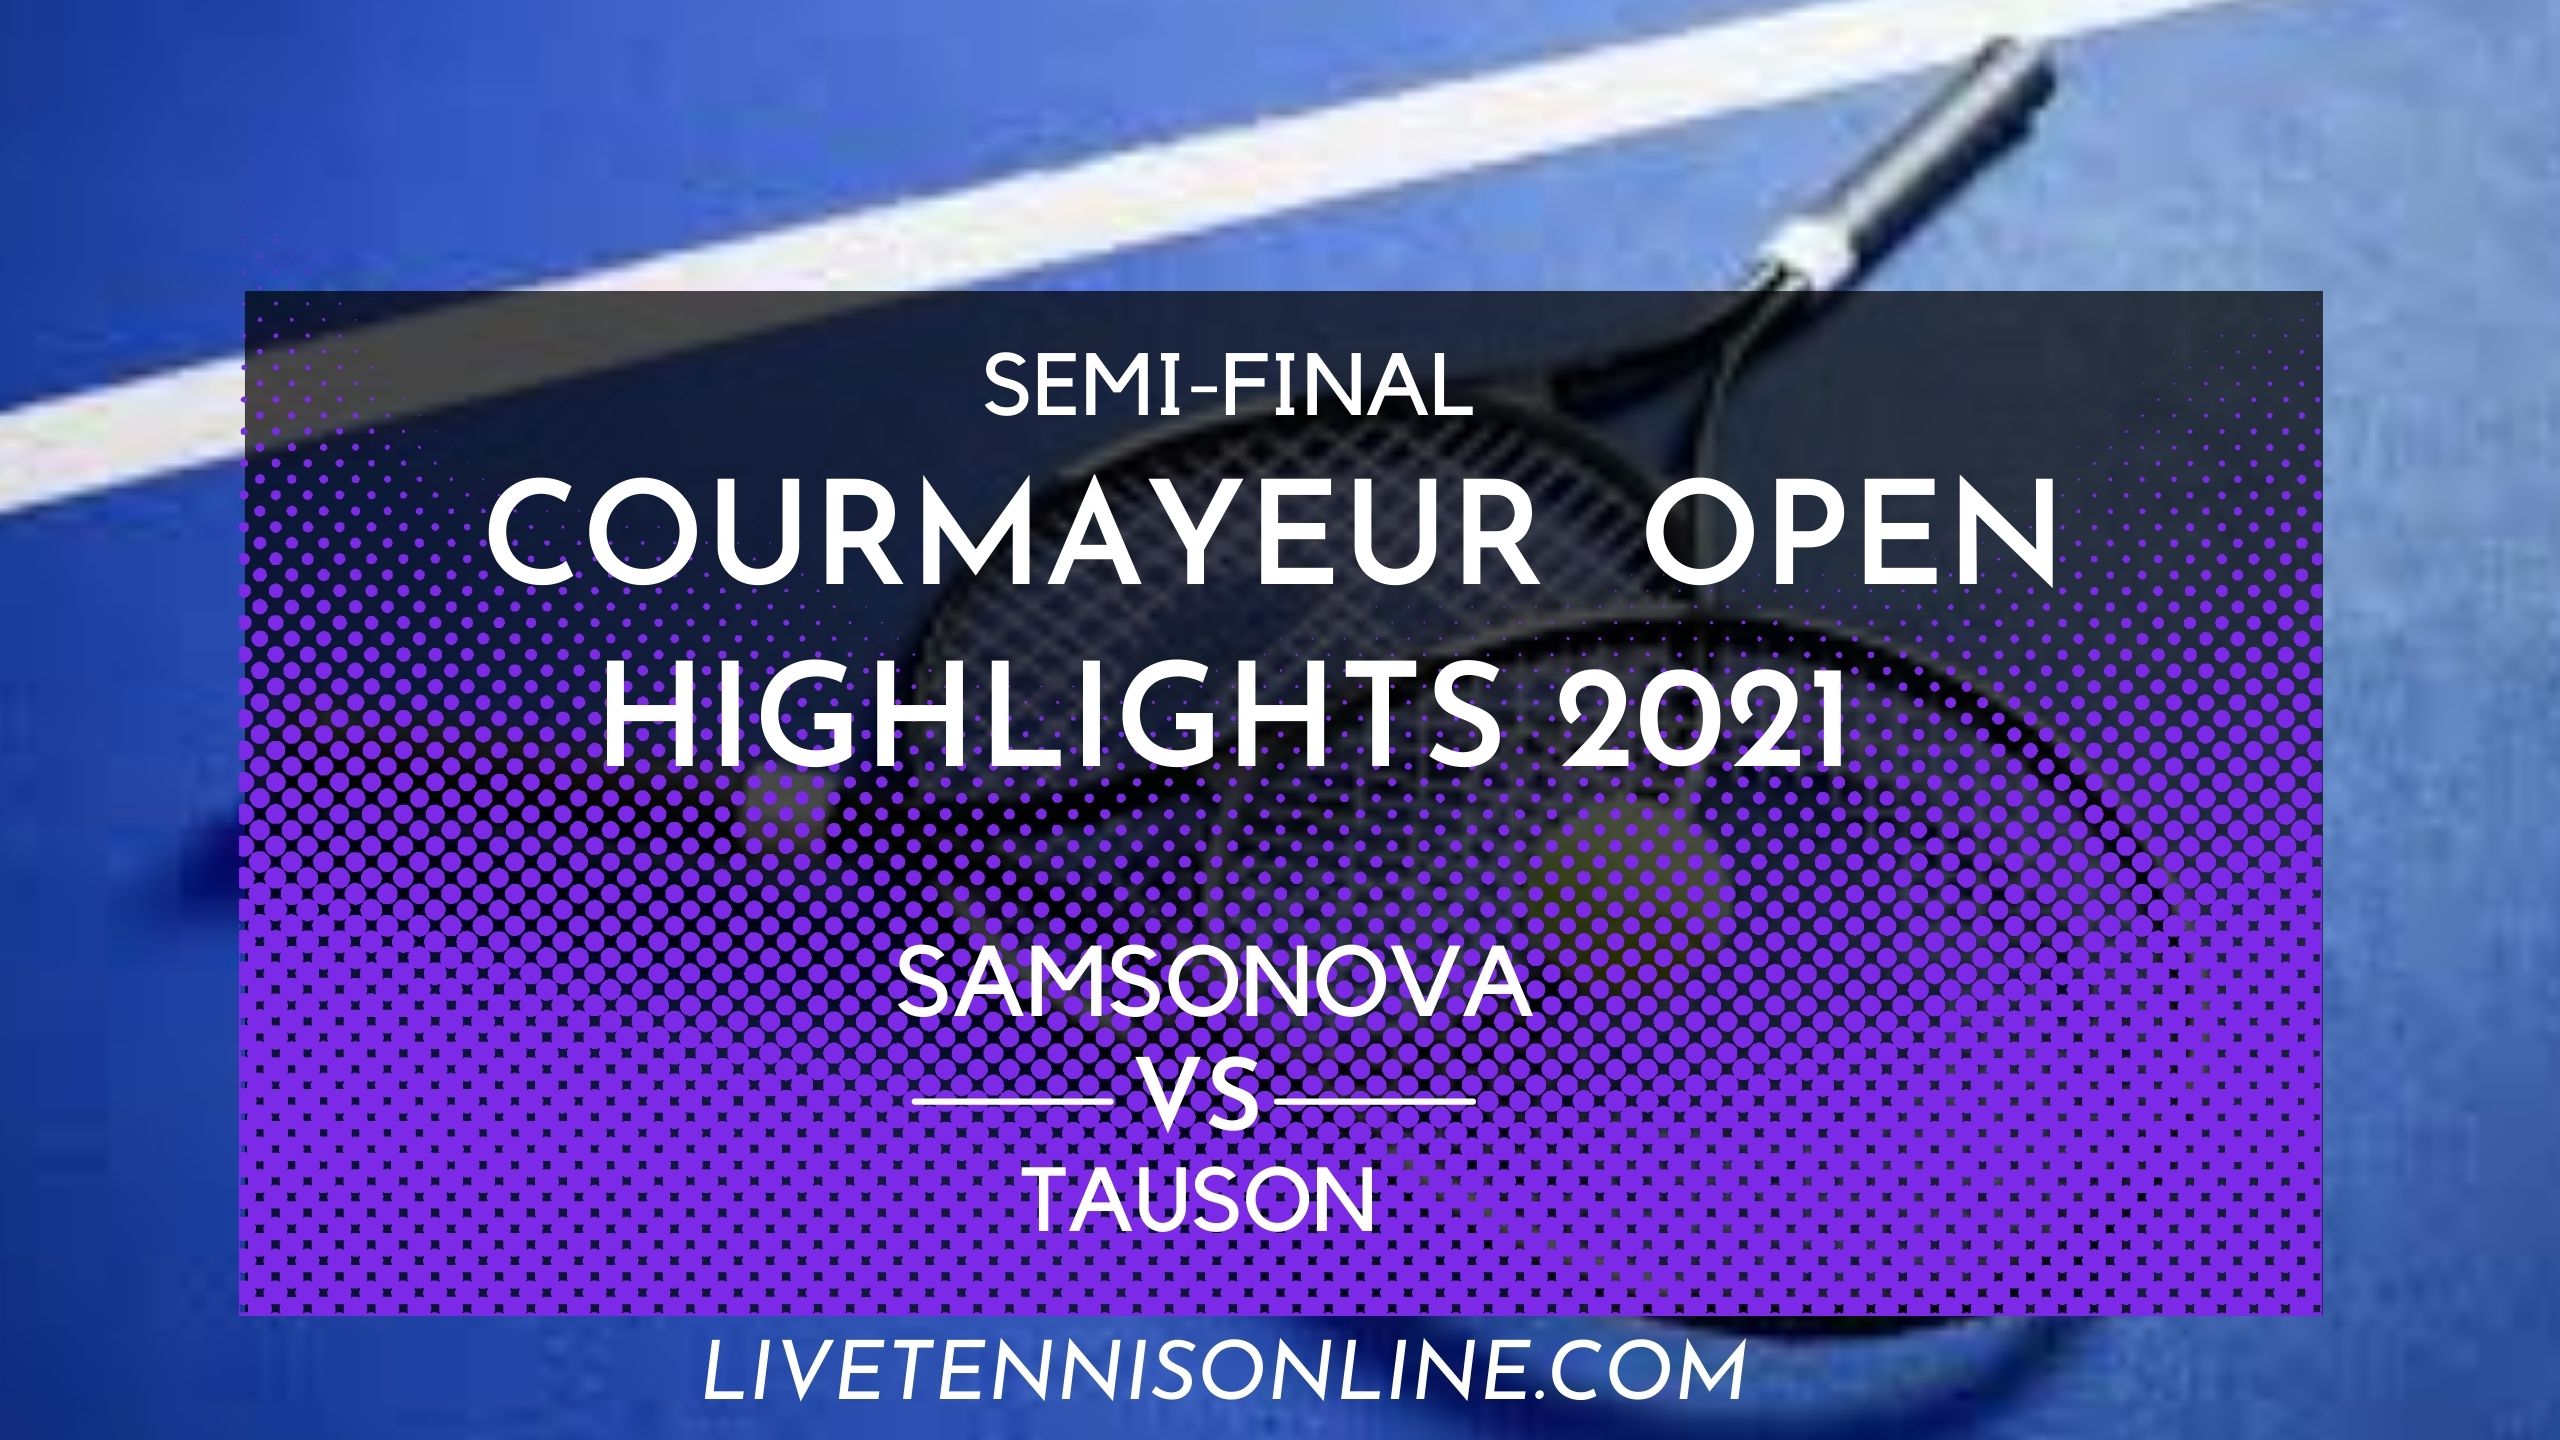 Samsonova Vs Tauson SF Highlights 2021 Courmayeur Open